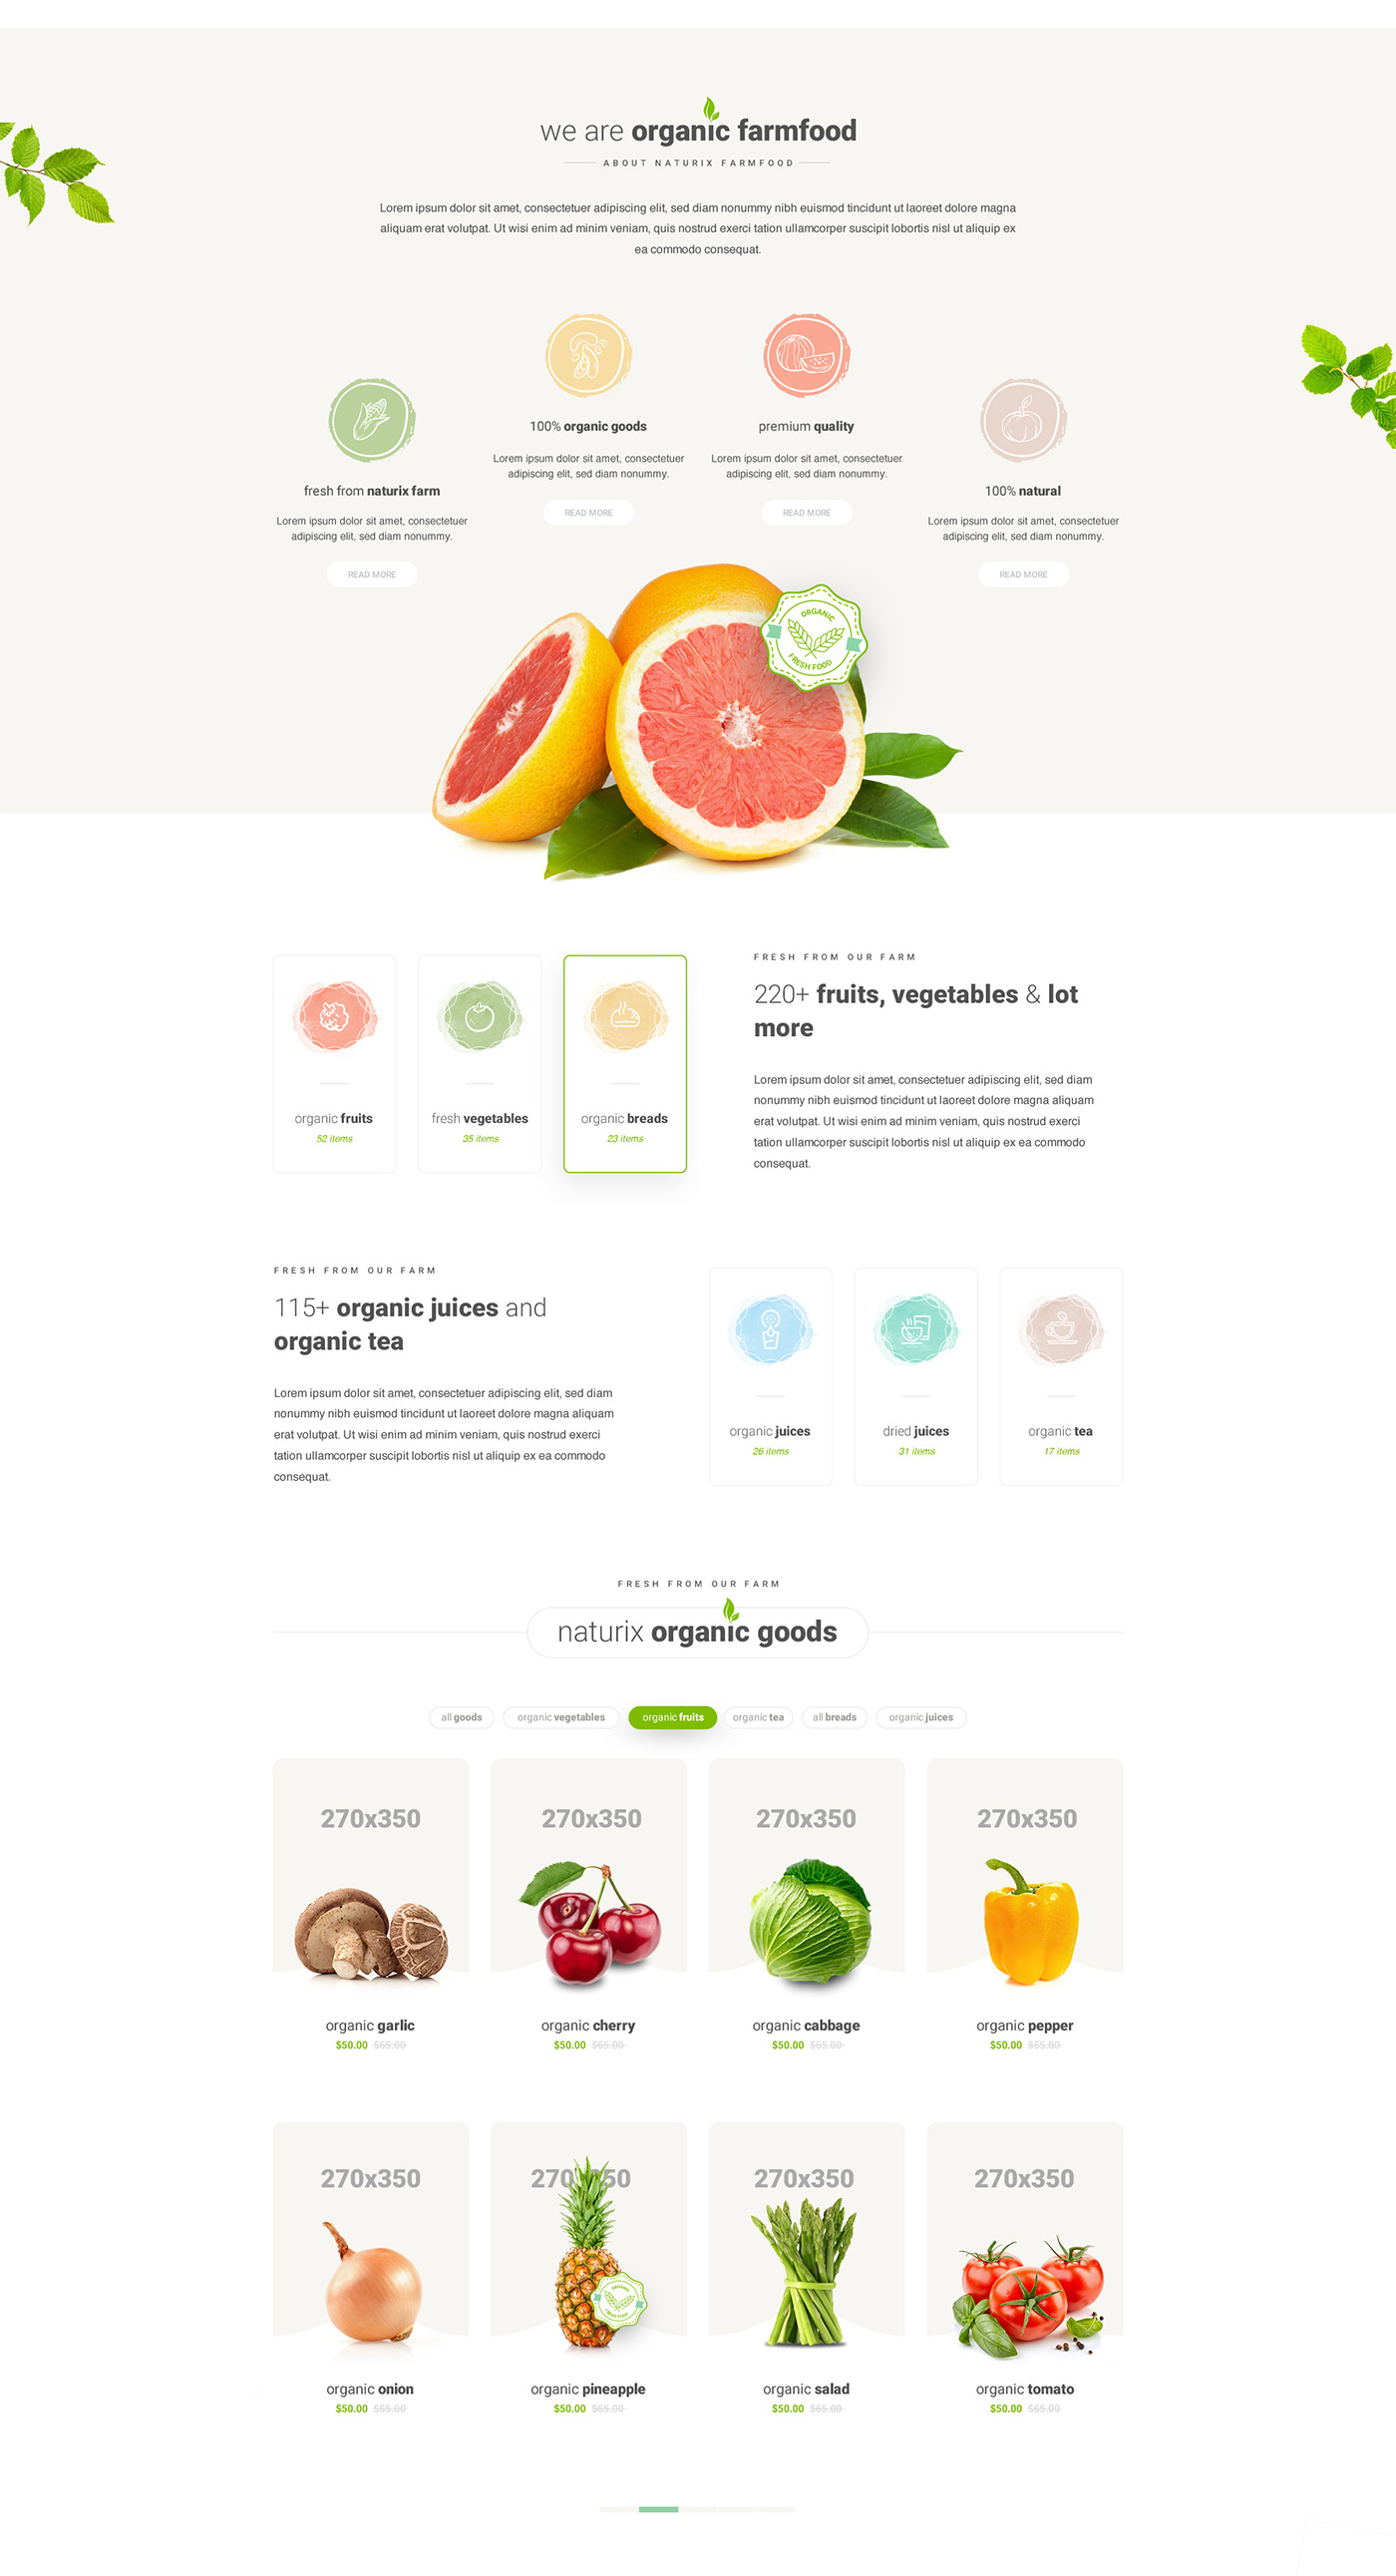 食品网站模板 Healthy Food Website